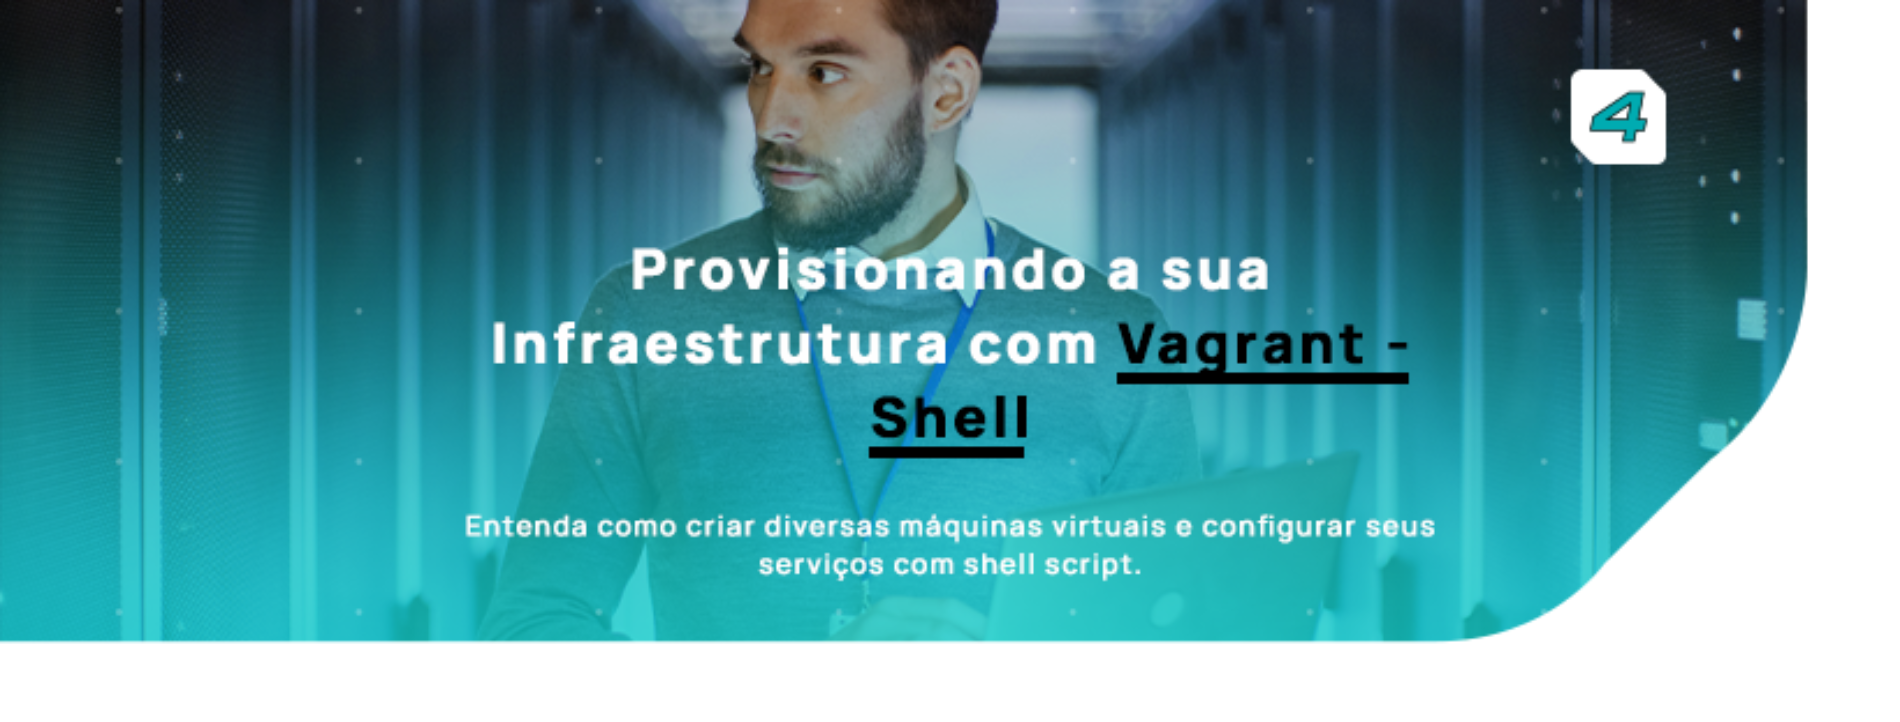 Provisionando sua infraestrutura com Vagrant-Shell